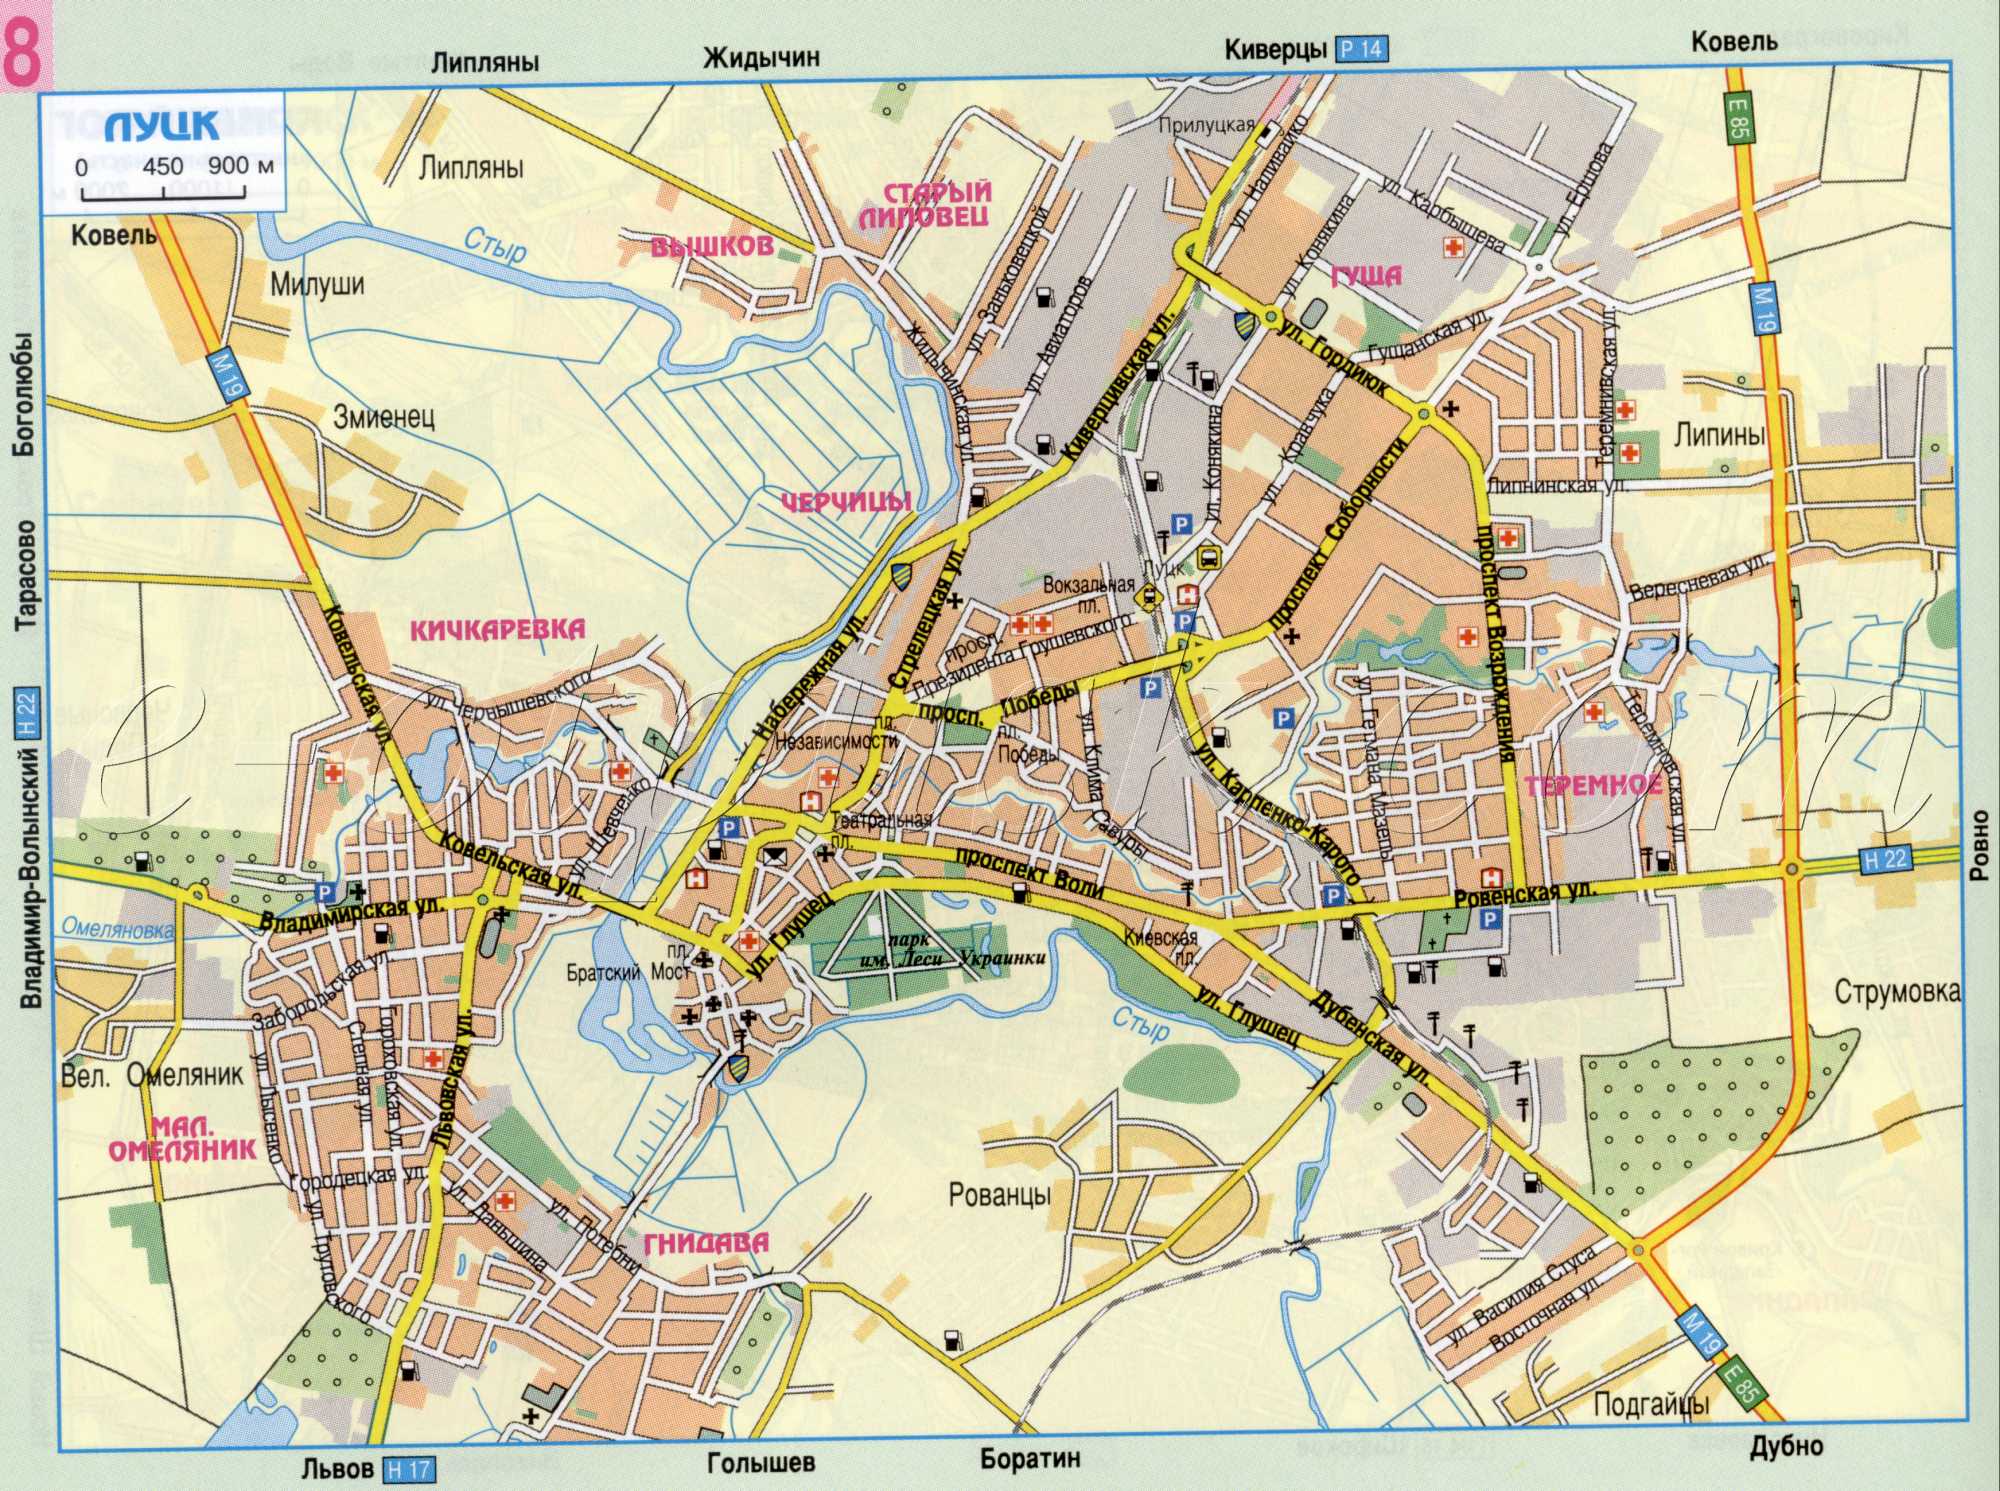 Карта Луцка автомобильная, схема проезда через город Луцк. Скачать бесплатно 